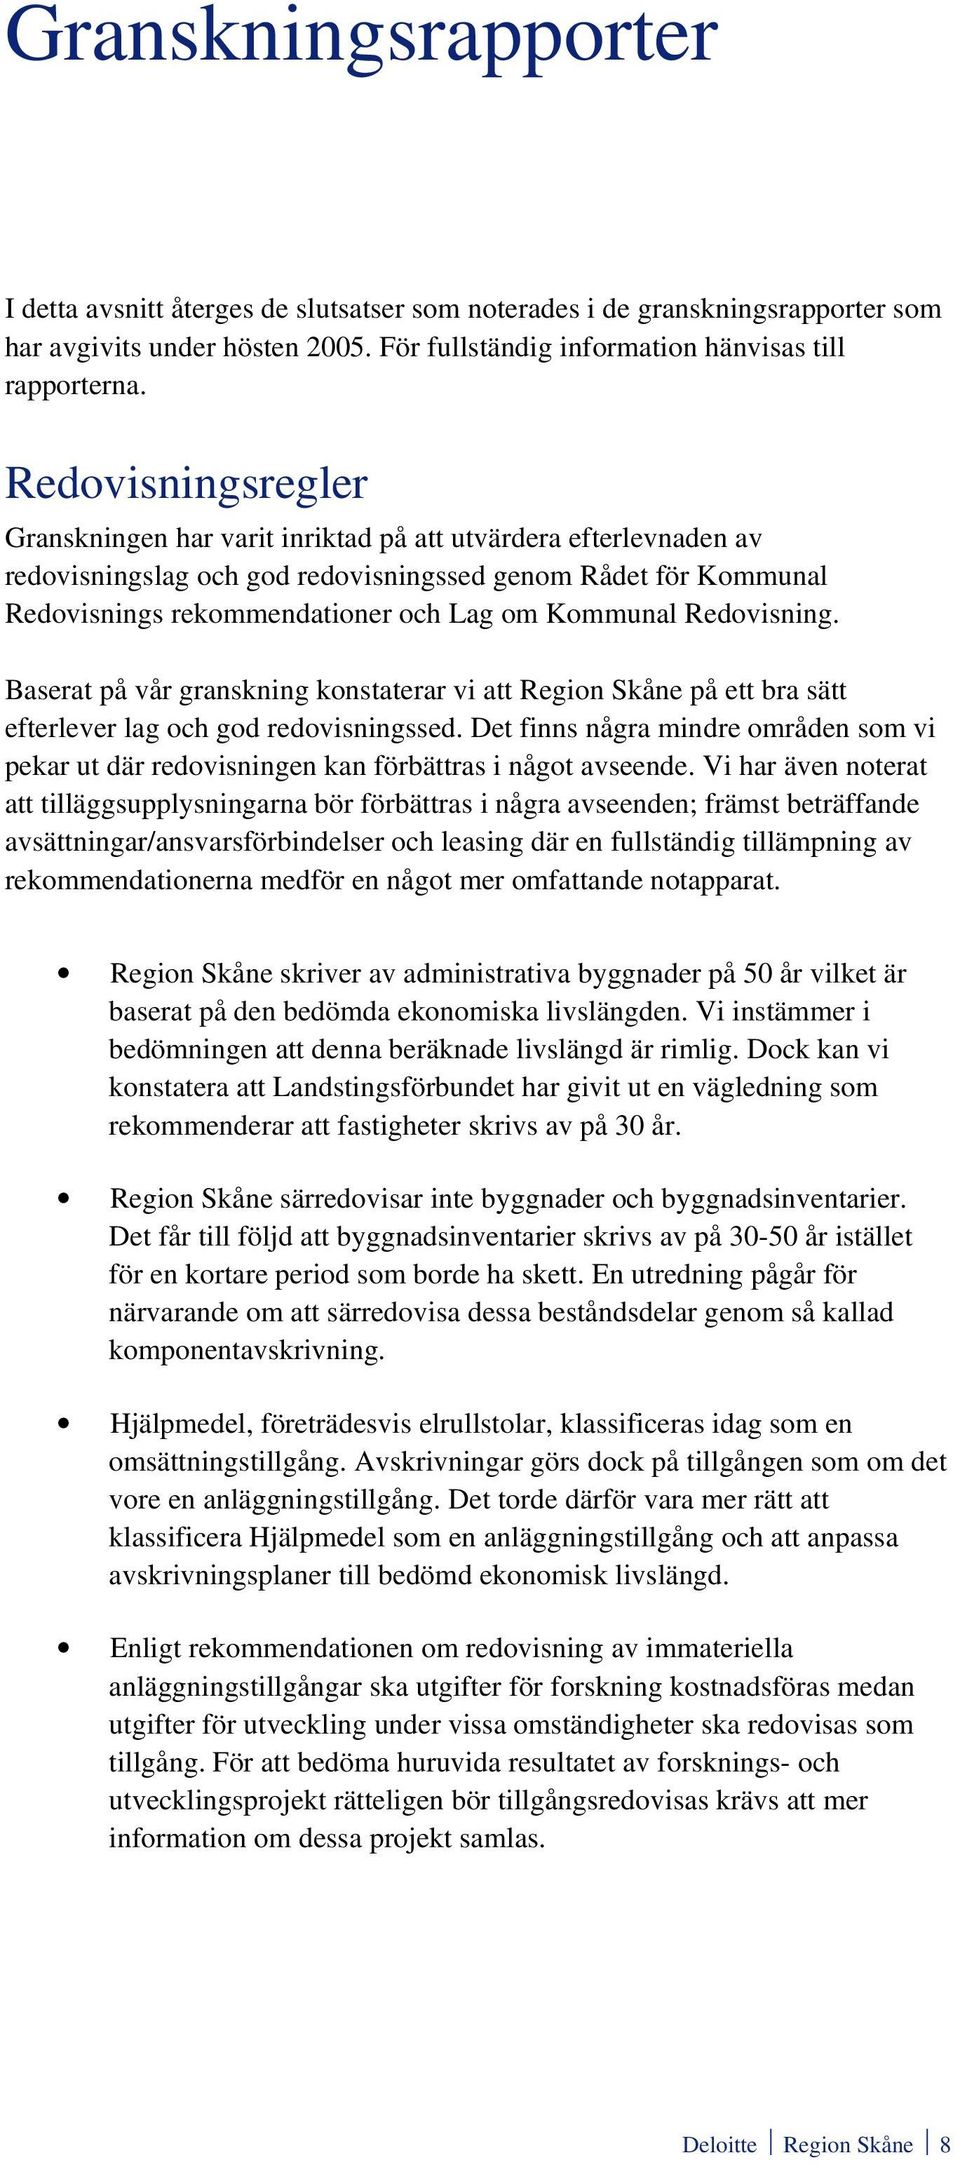 Redovisning. Baserat på vår granskning konstaterar vi att Region Skåne på ett bra sätt efterlever lag och god redovisningssed.